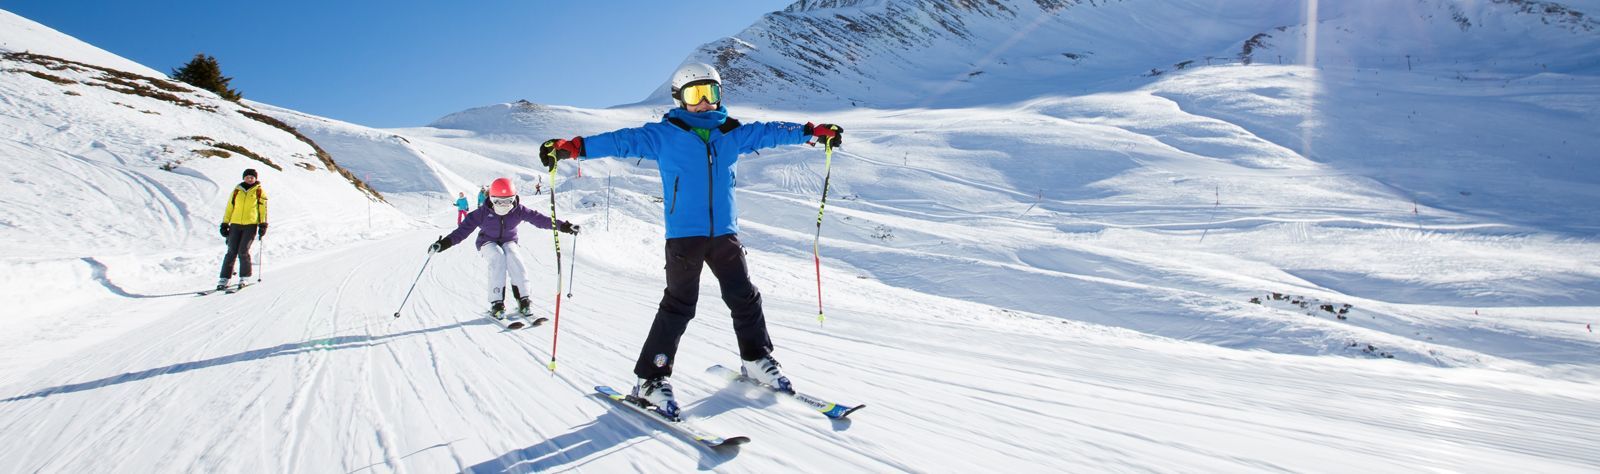 Chamonix Ski Holidays